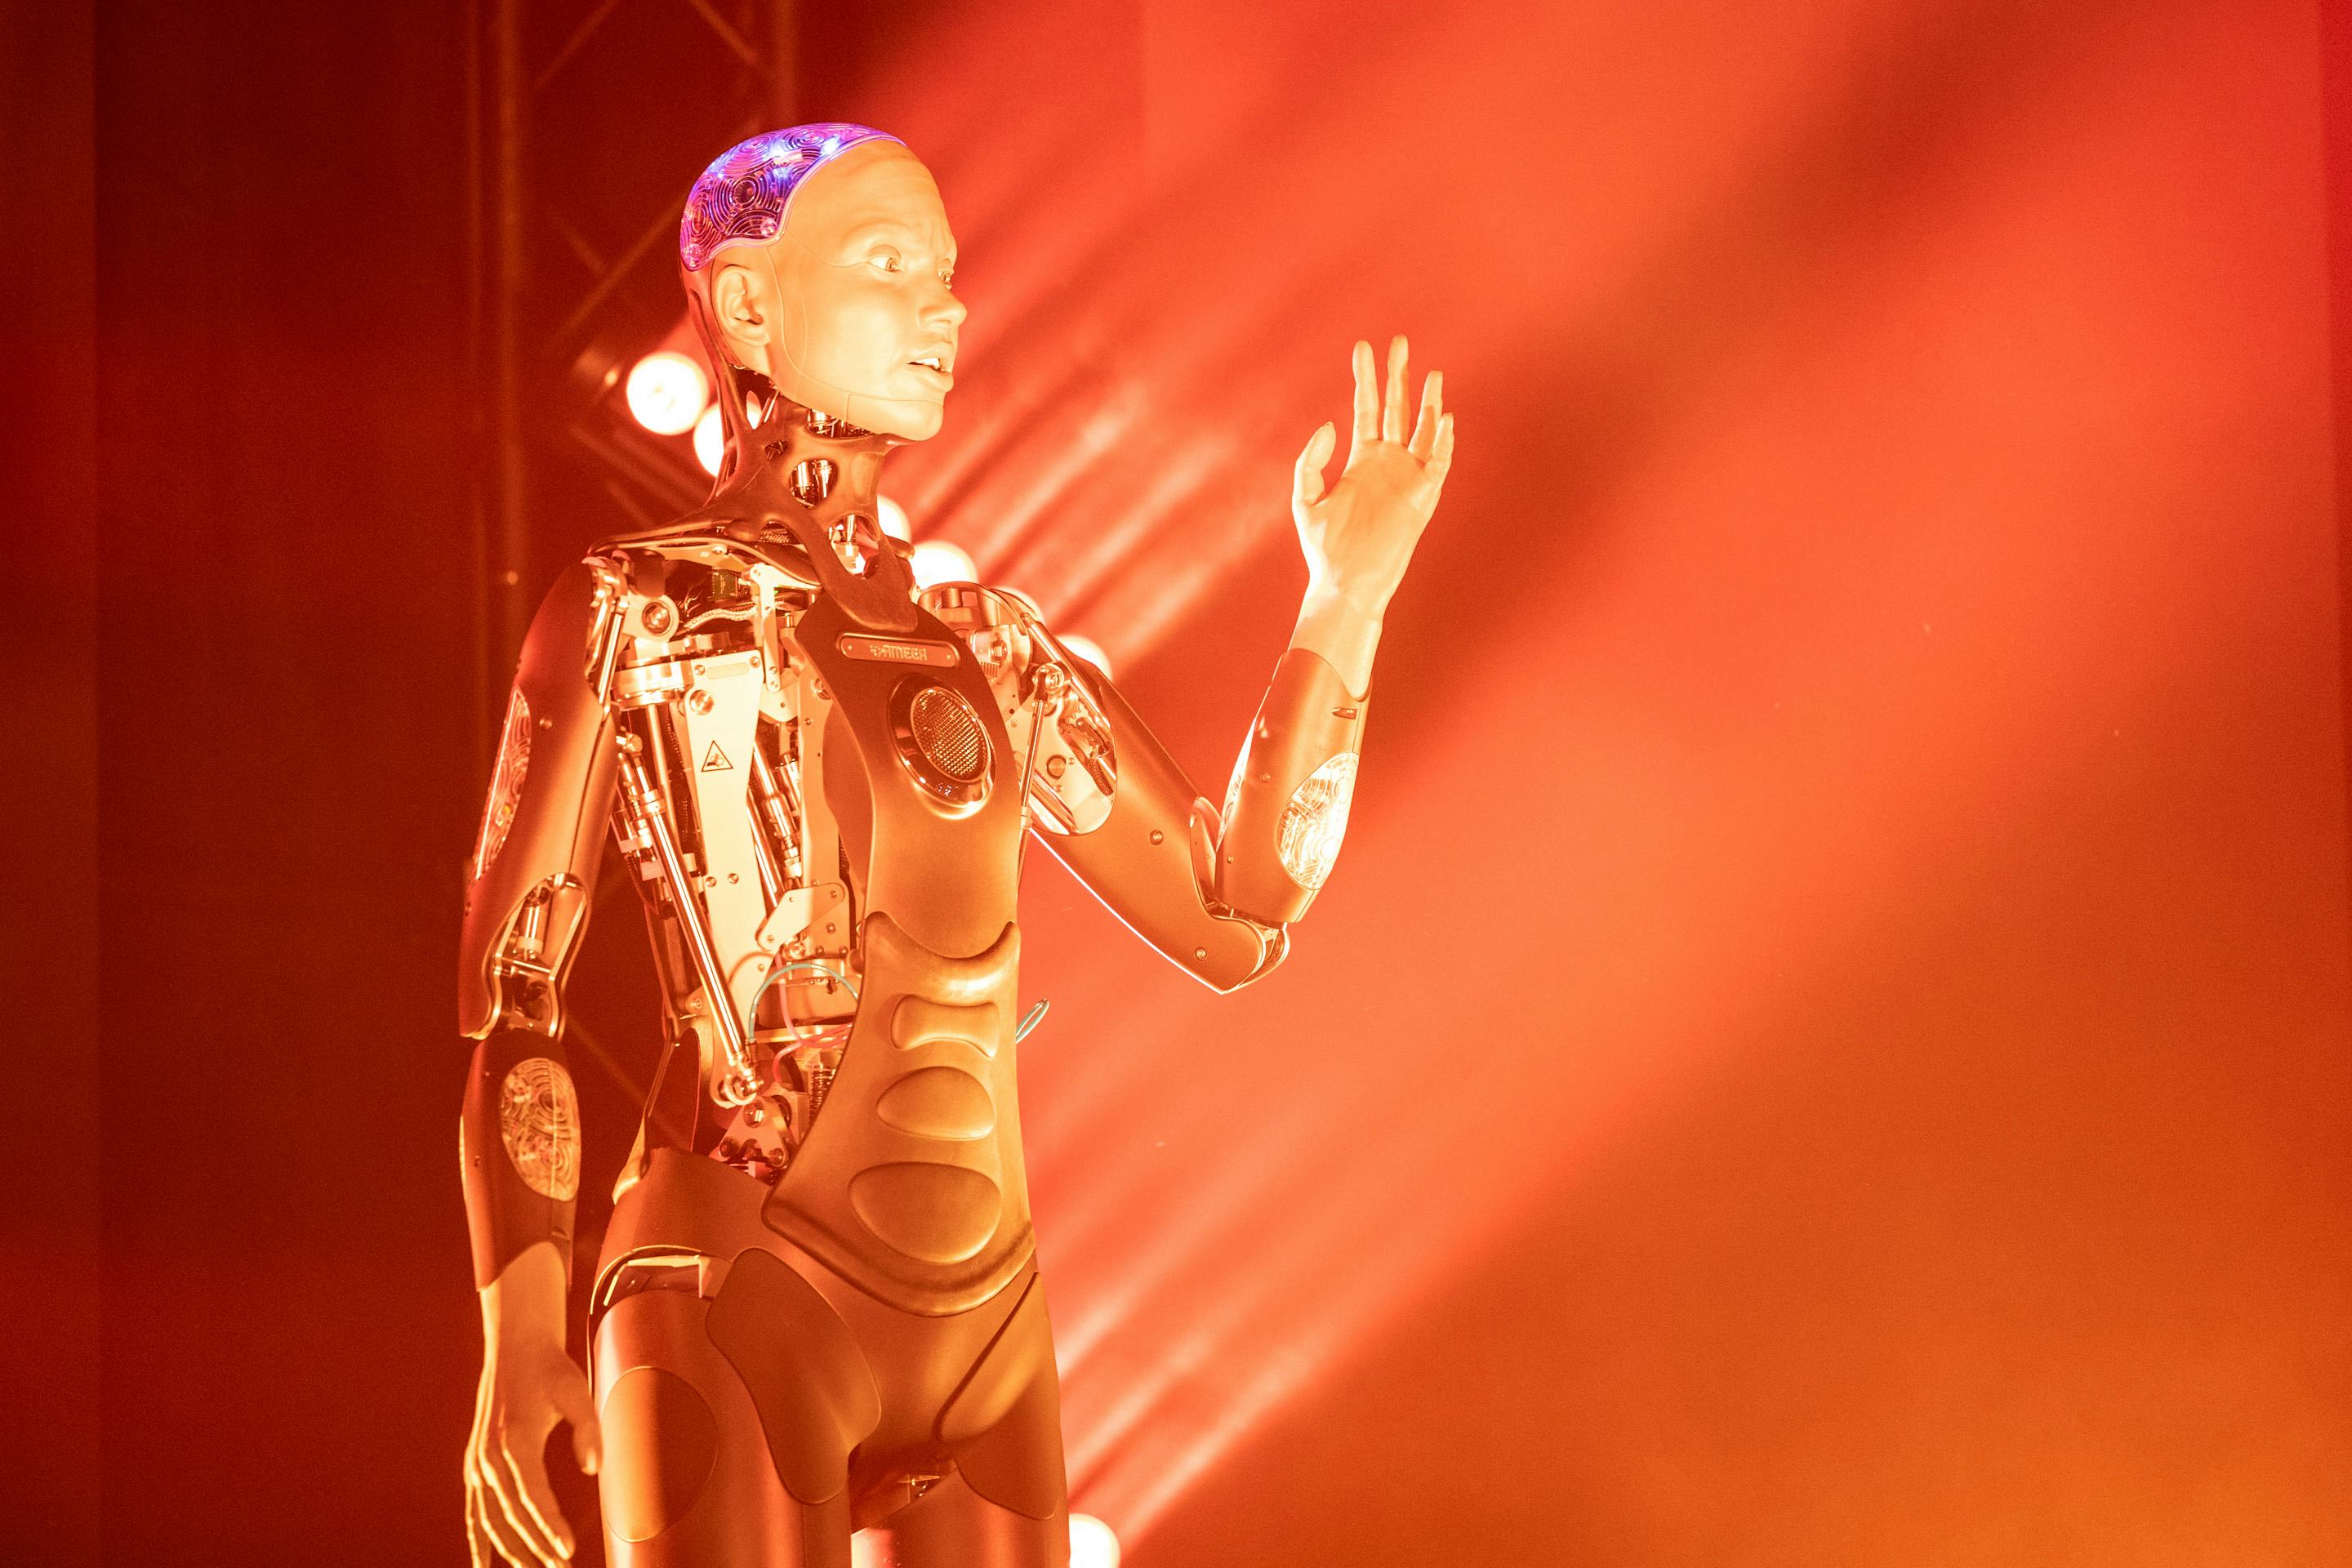 Foto: Roboter, der einen Arm ausstreckt. Im Hintergrund orange Beleuchtung